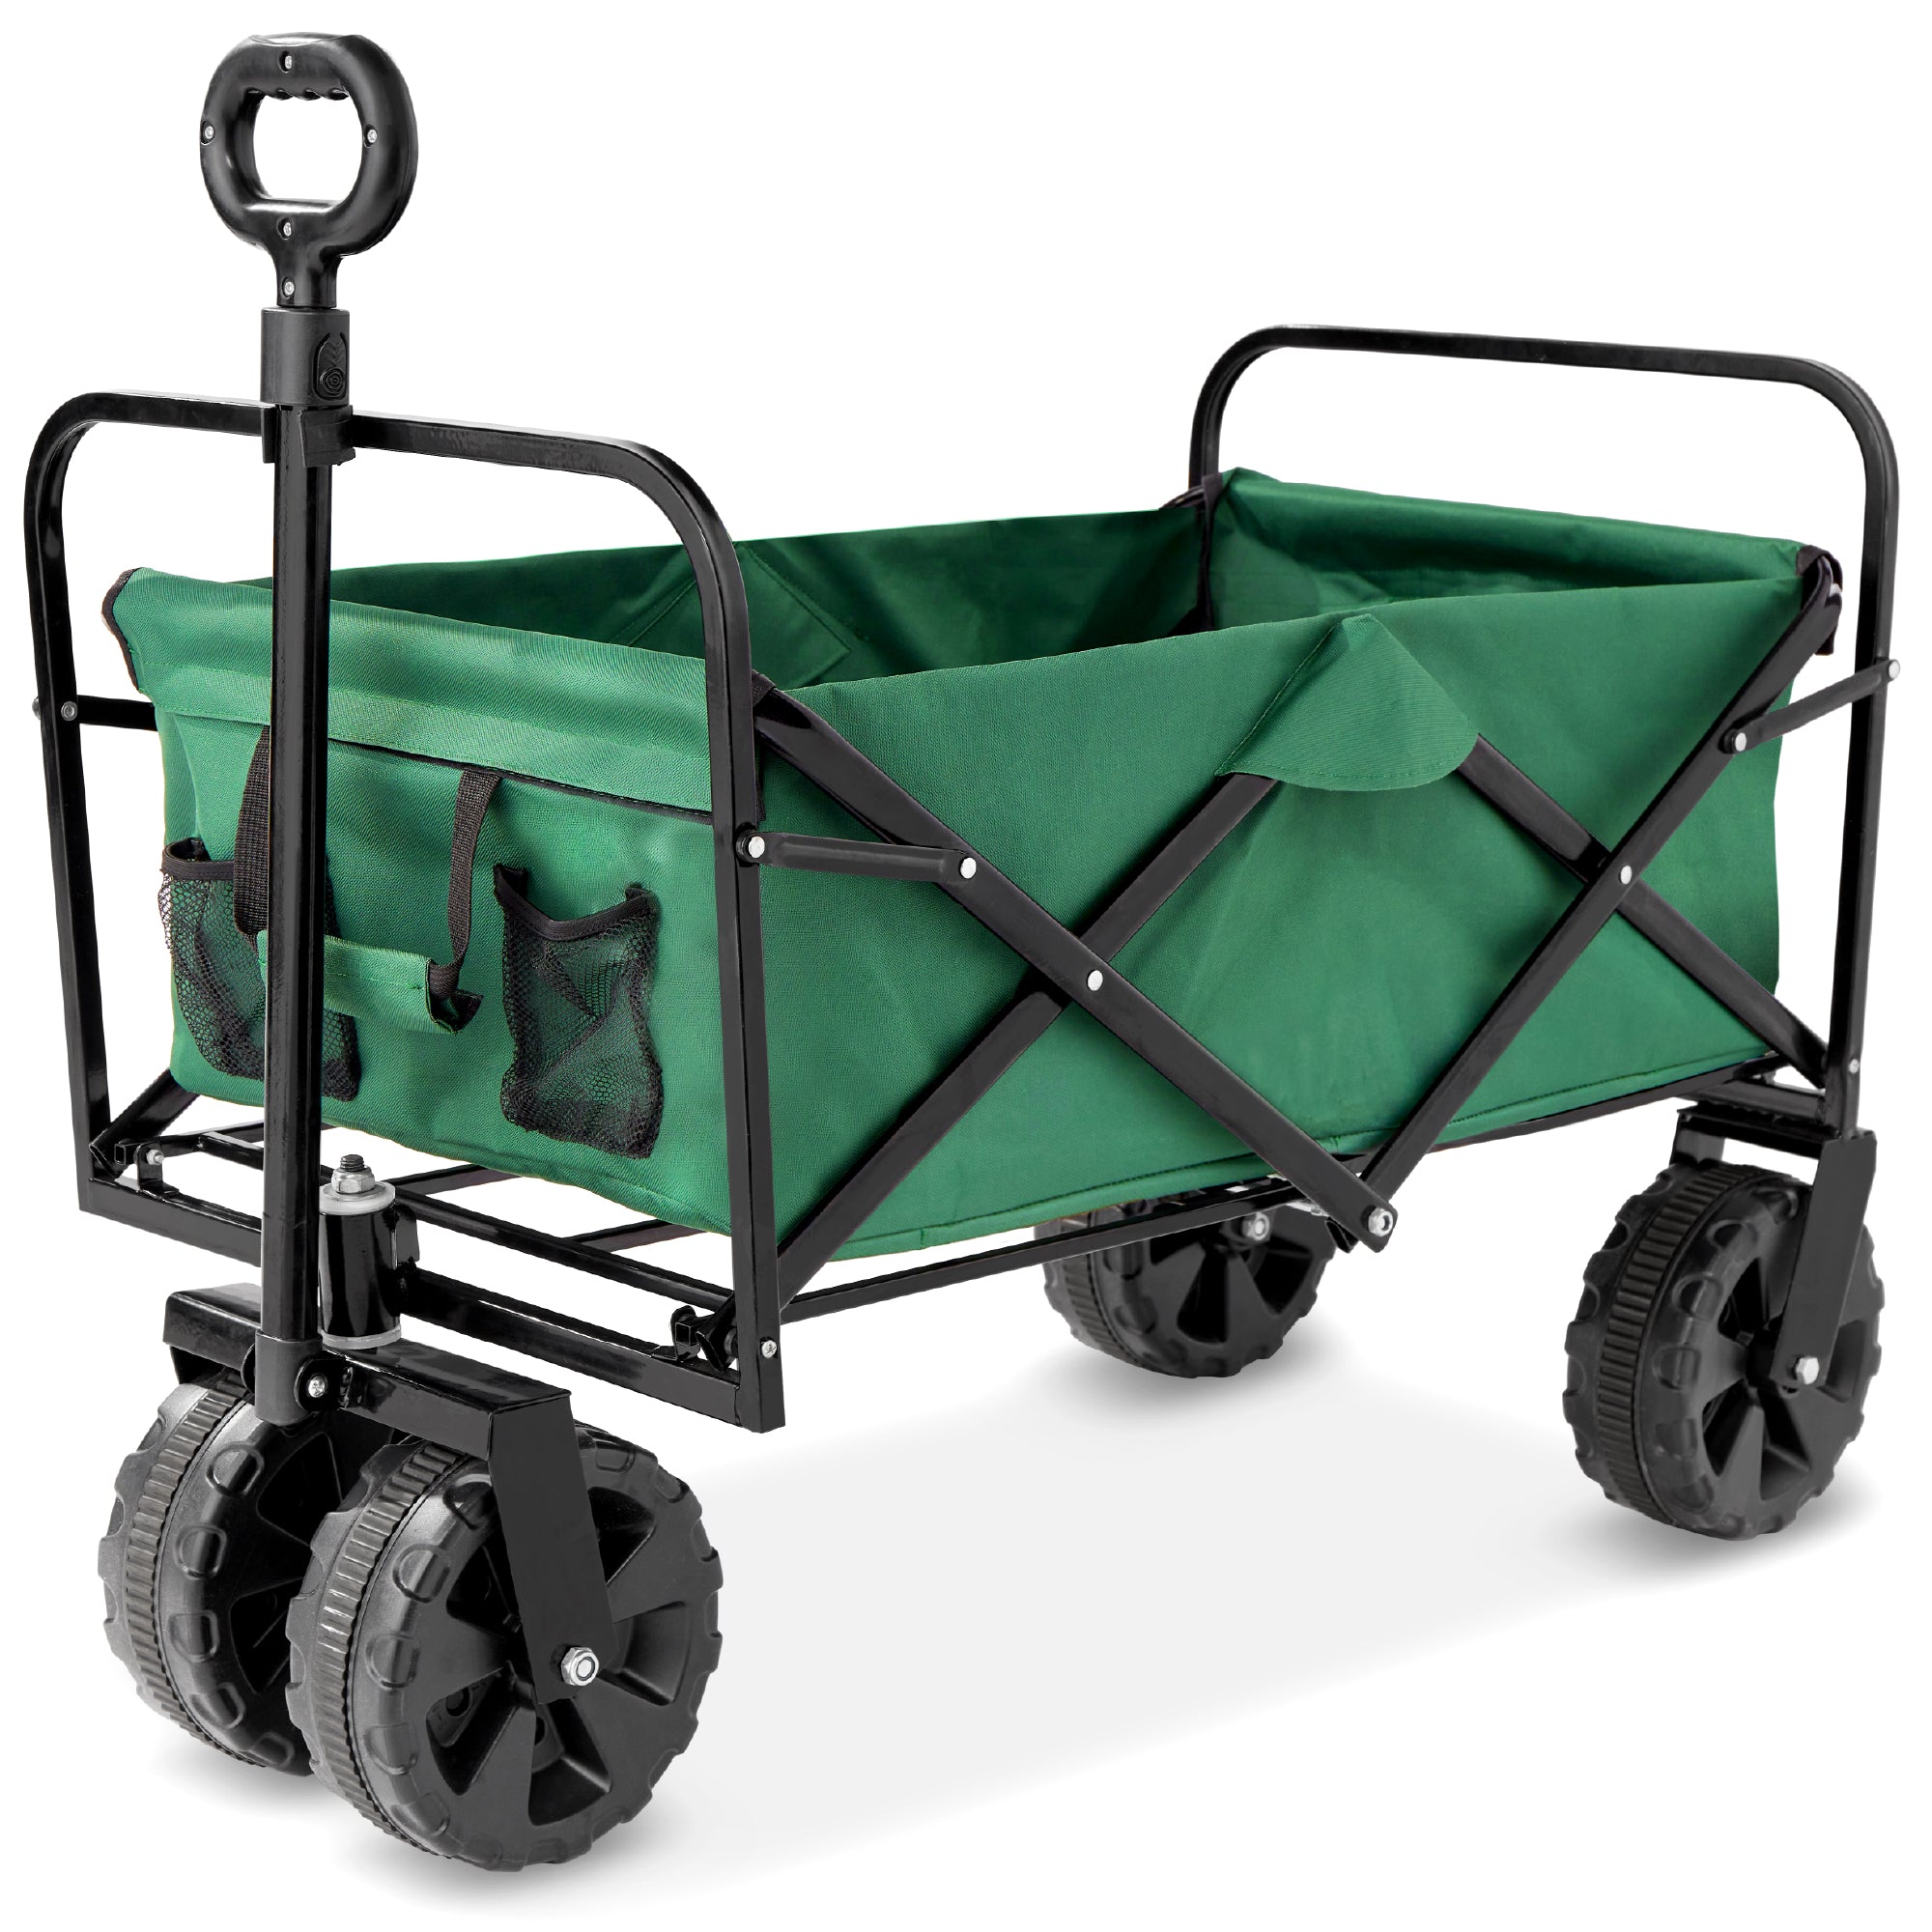 Indoor Outdoor Utility Cart w/ 360-Degree Wheels, Adjustable